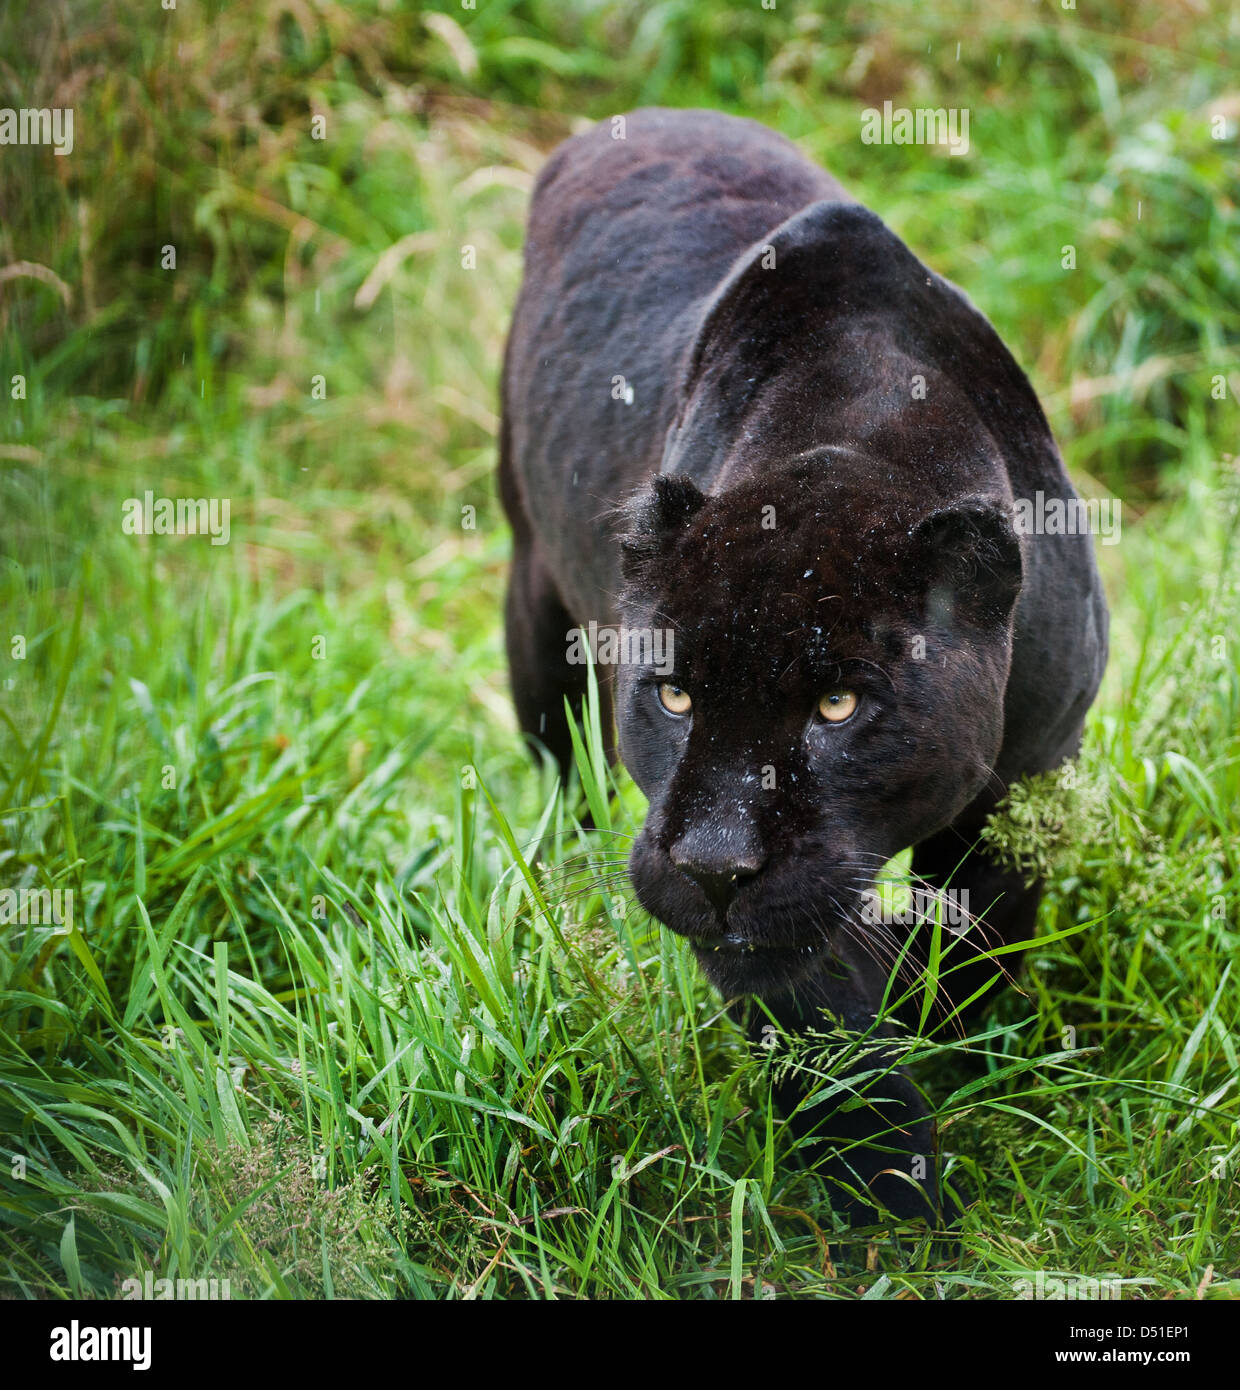 Black jaguar Panthera Onca prowling through long grass Stock Photo